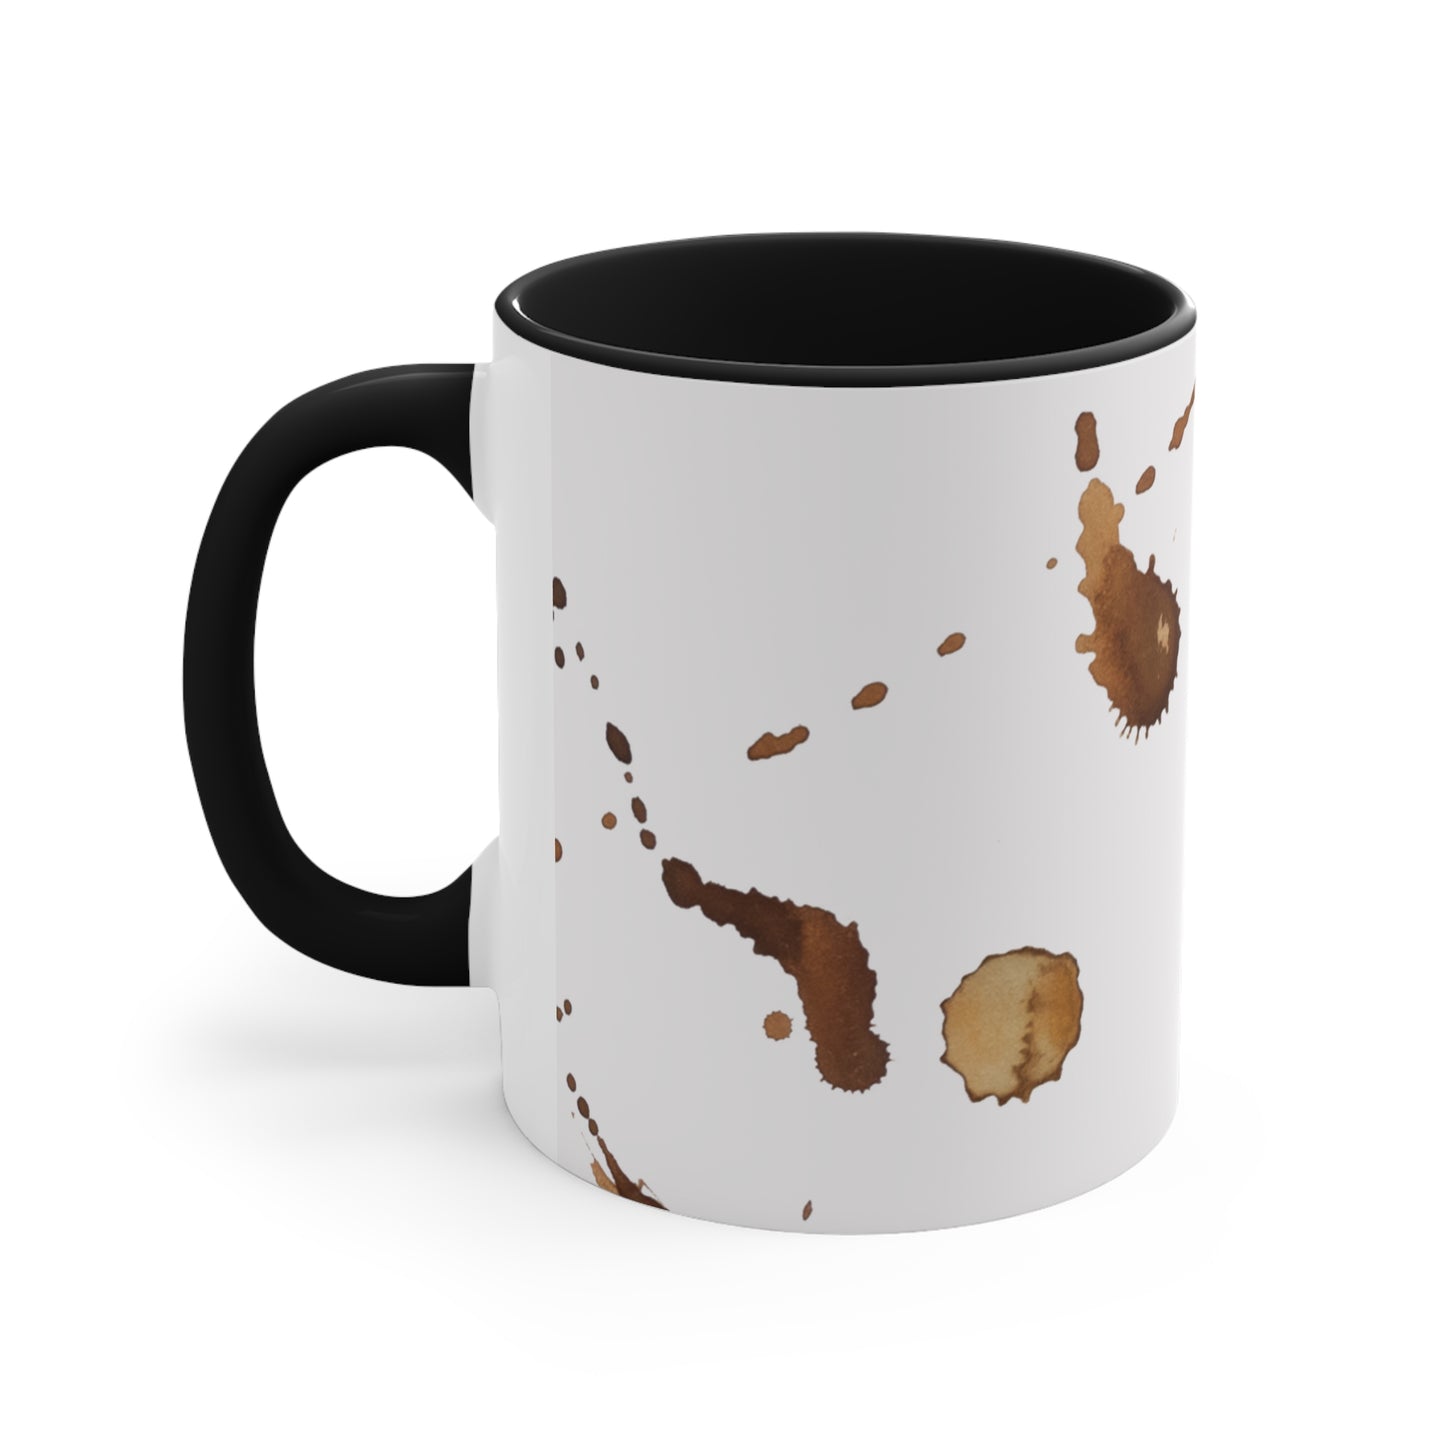 Coffee First Mug, Coffee Lovers Mug, Gift for Dad, Gift for Mom, Funny Coffee Mug, Accent Coffee Mug, 11oz